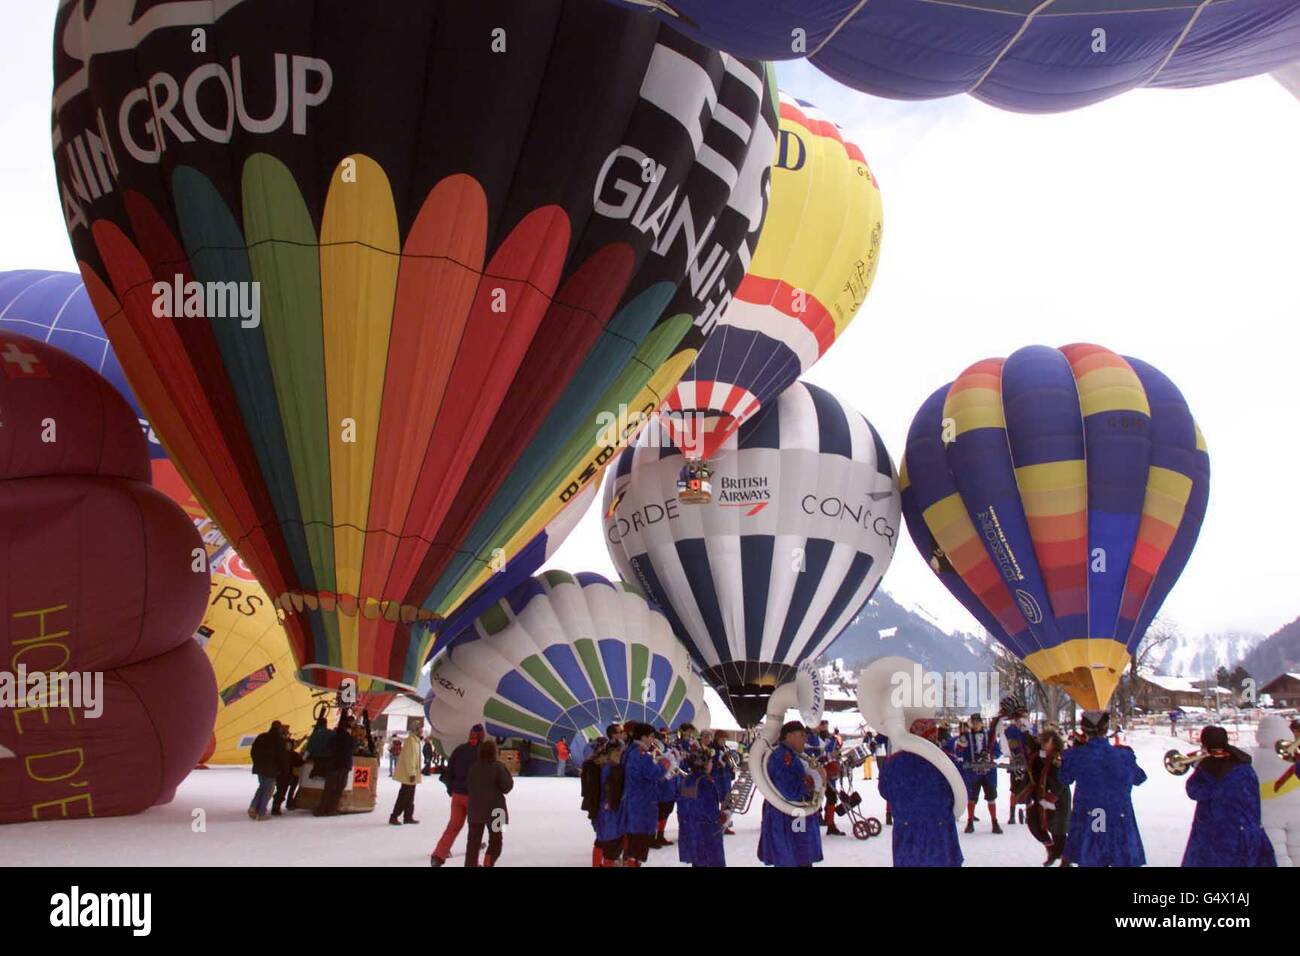 Die jährliche International Hot Air Balloon Week startet in Chateau d'Oex, Schweiz, wo im März 1999 Ehrengäste rund um die Weltballon-Rekordbrecher Brian Jones aus Wiltshire und Bertrand Piccard aus der Schweiz ihren Startschuss gegeben haben. * Sie wurden am ersten Tag des Festivals als Ehrengäste von Helden begrüßt. Stockfoto